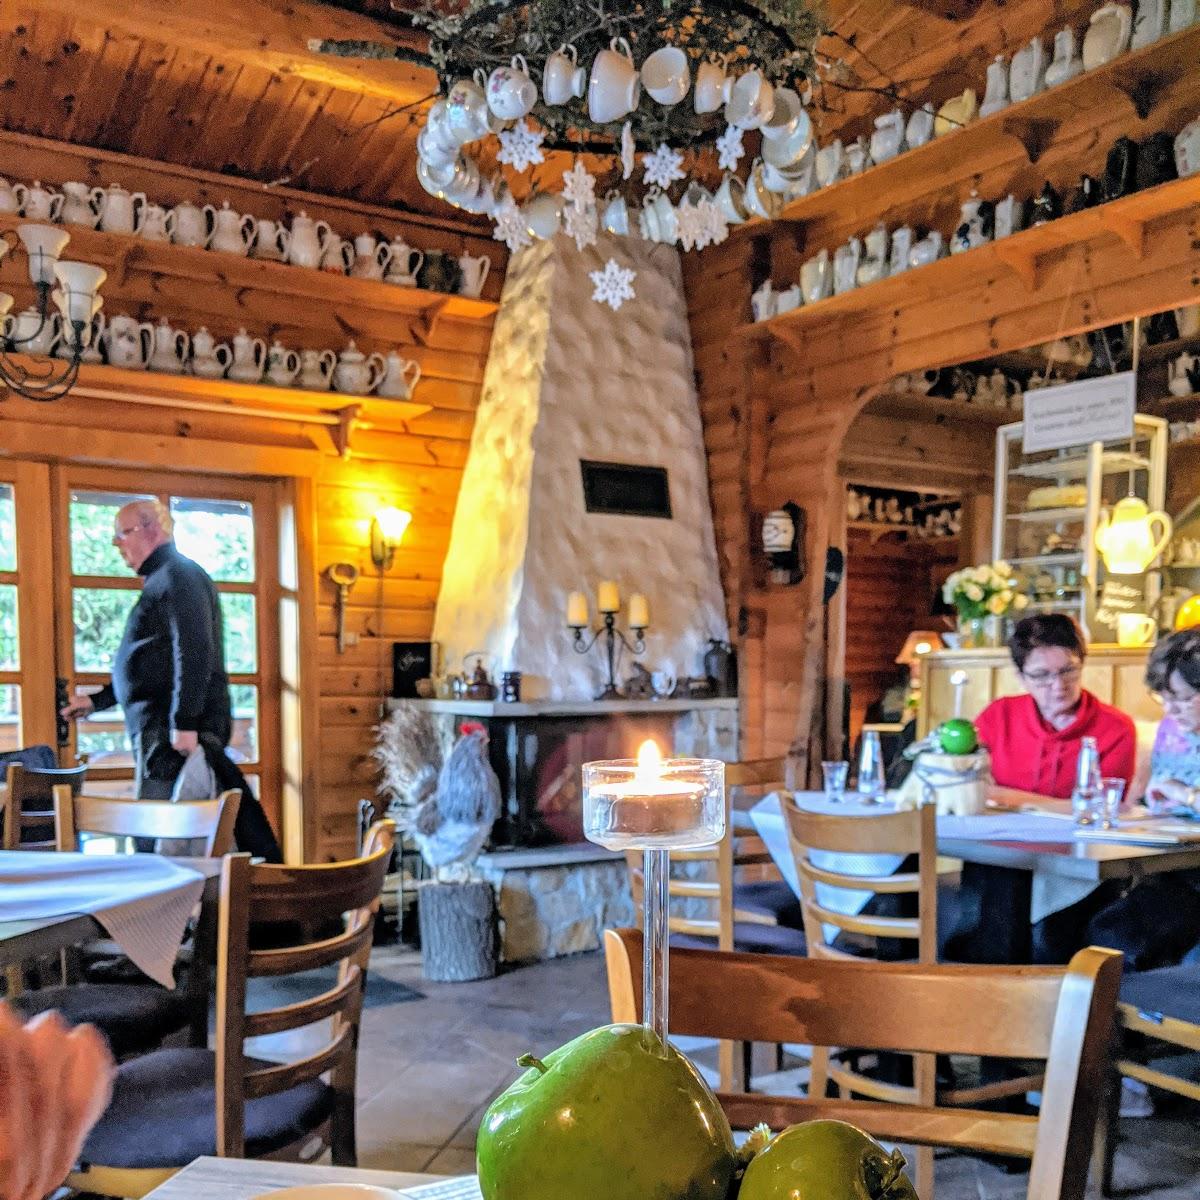 Restaurant "Café Holz-Appel" in Groß Lindow